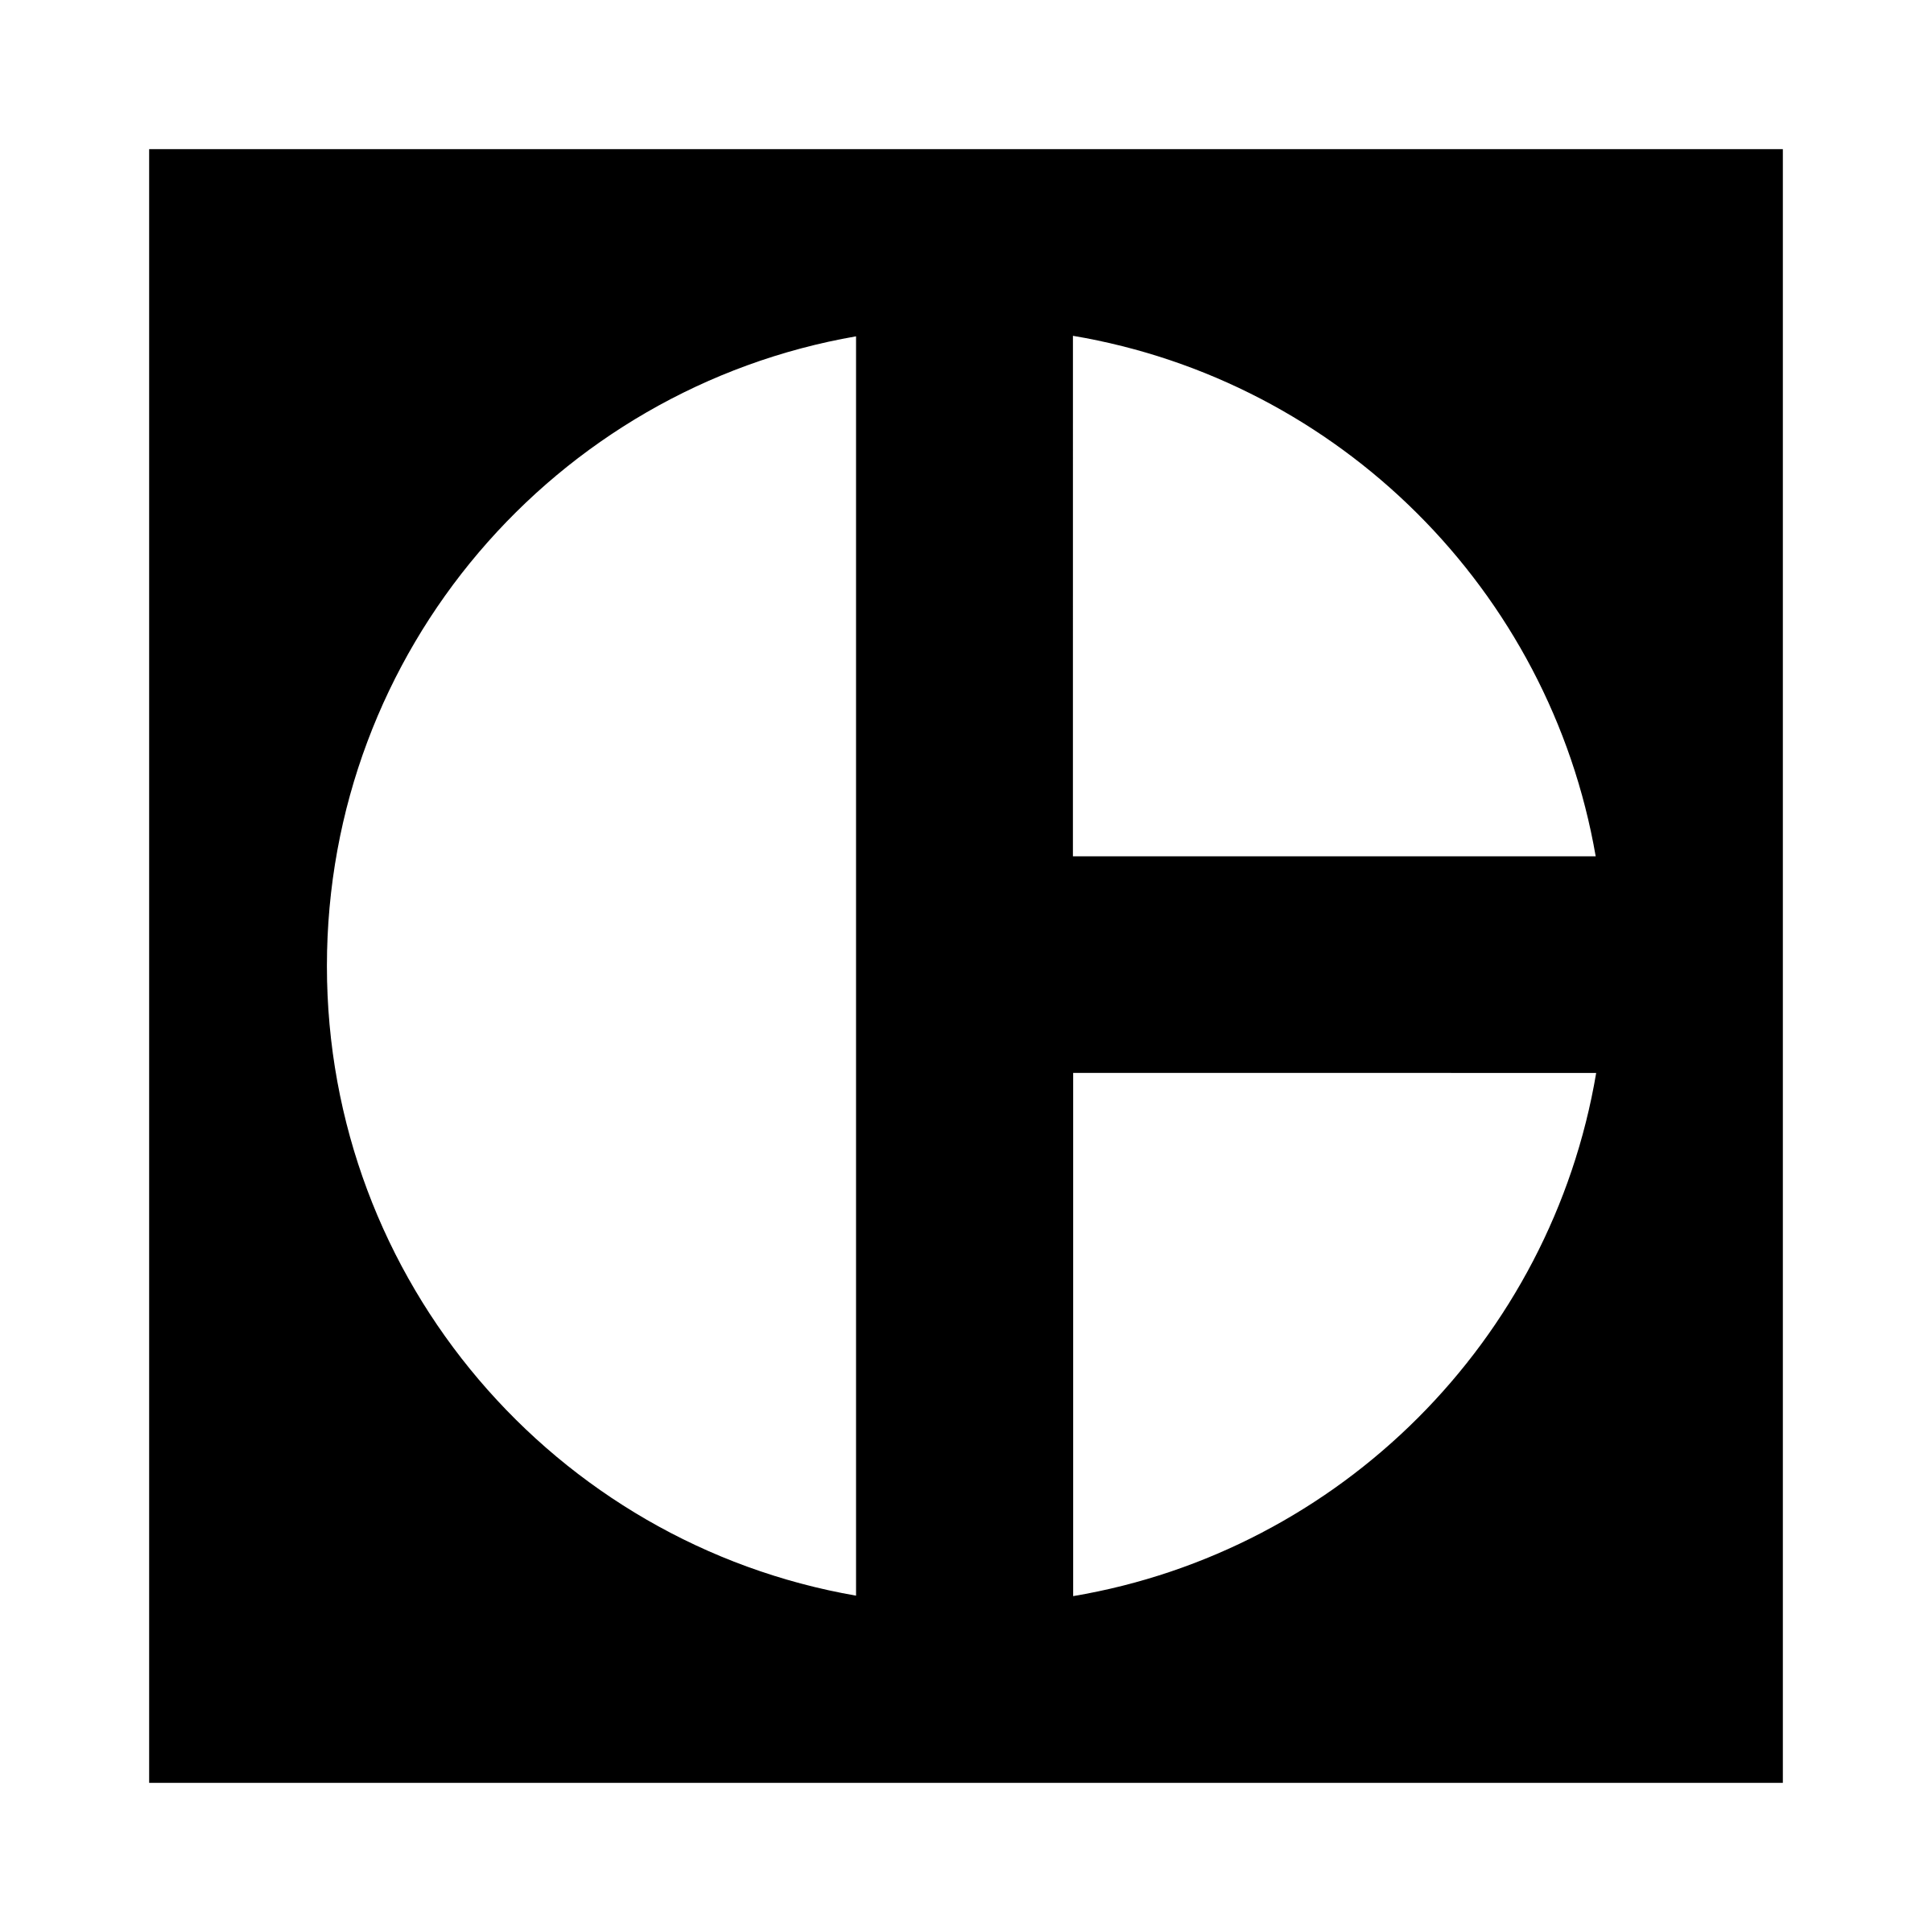 Black and White Caterpillar Logo - Caterpillar Logo PNG Transparent & SVG Vector